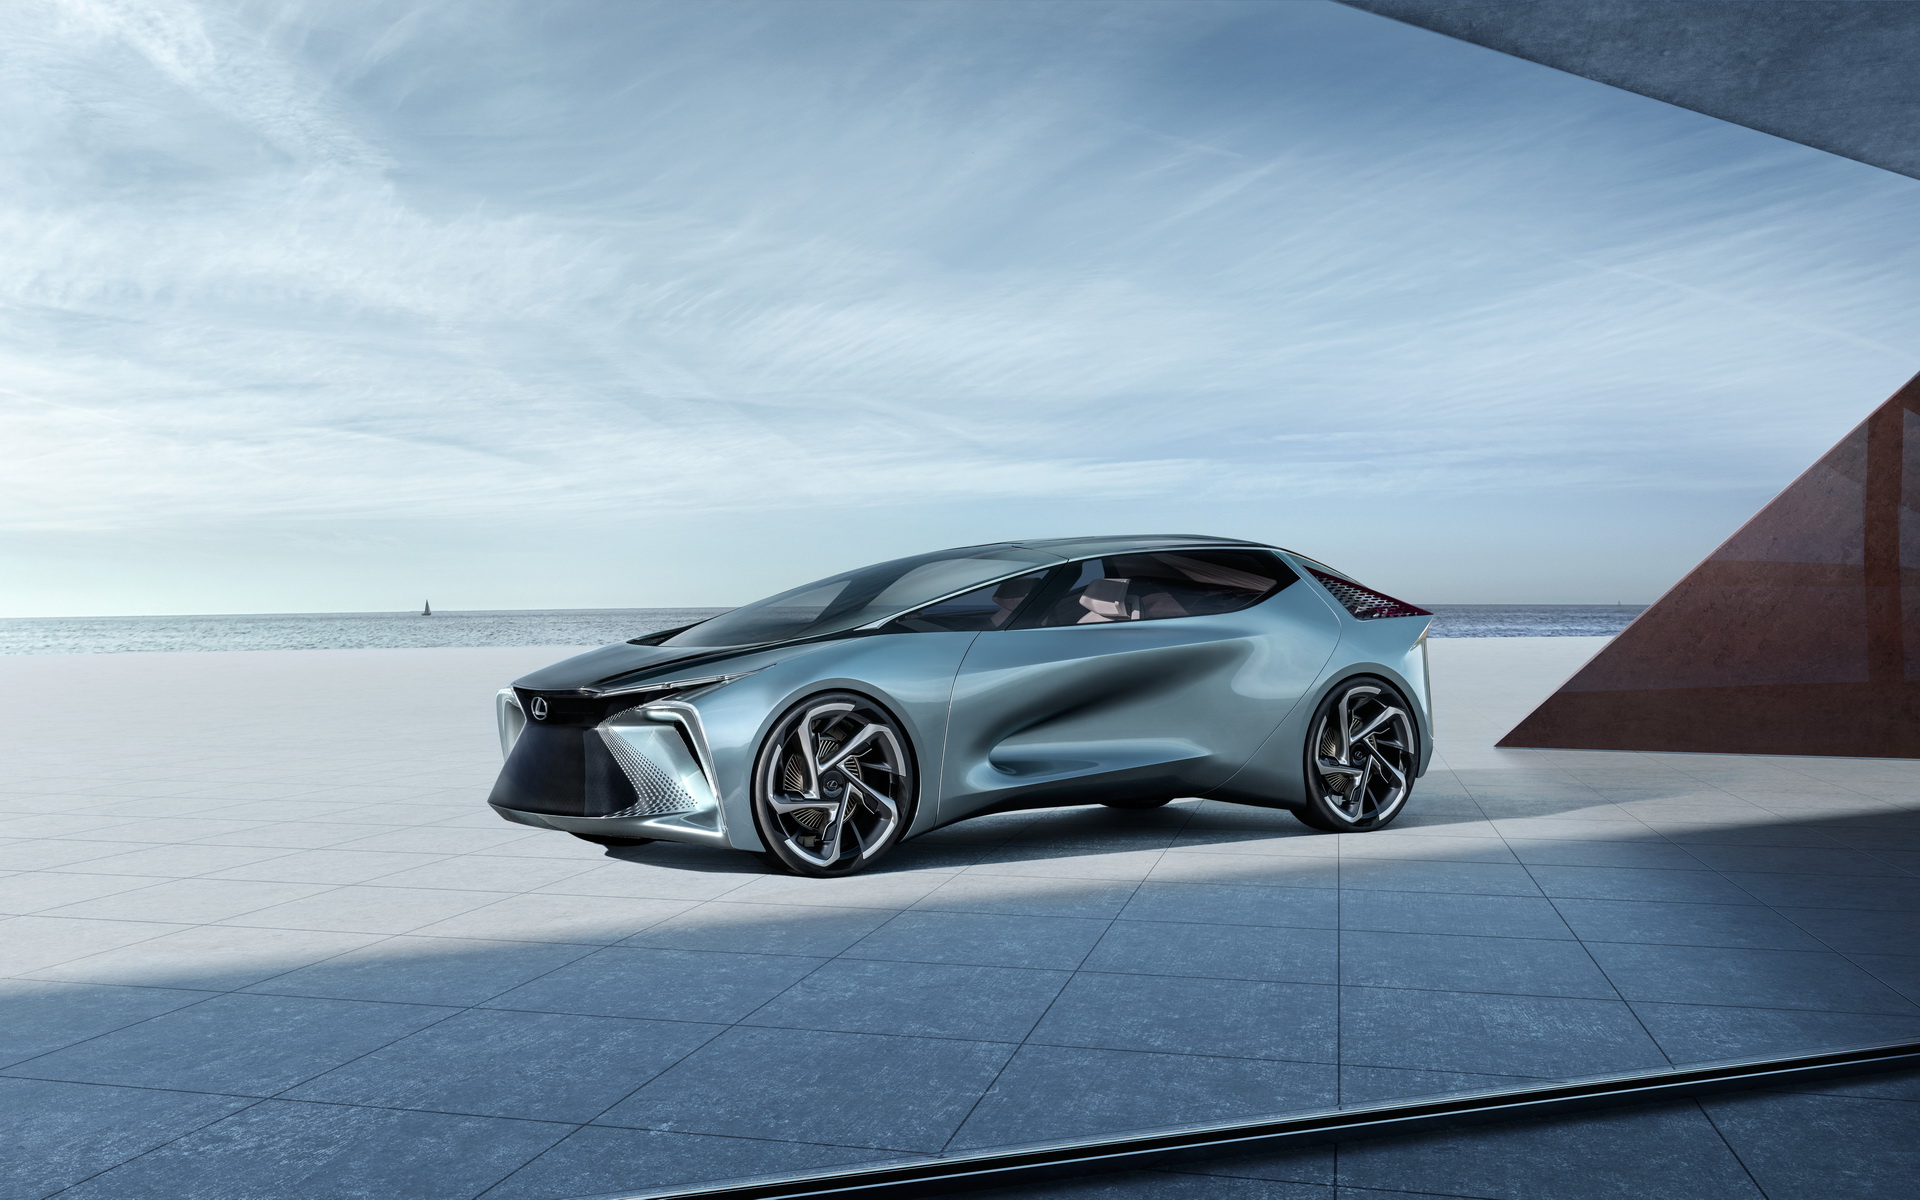 "بالصور" أبرز السيارات الجديدة القادمة في معرض جنيف للسيارات 2020 6